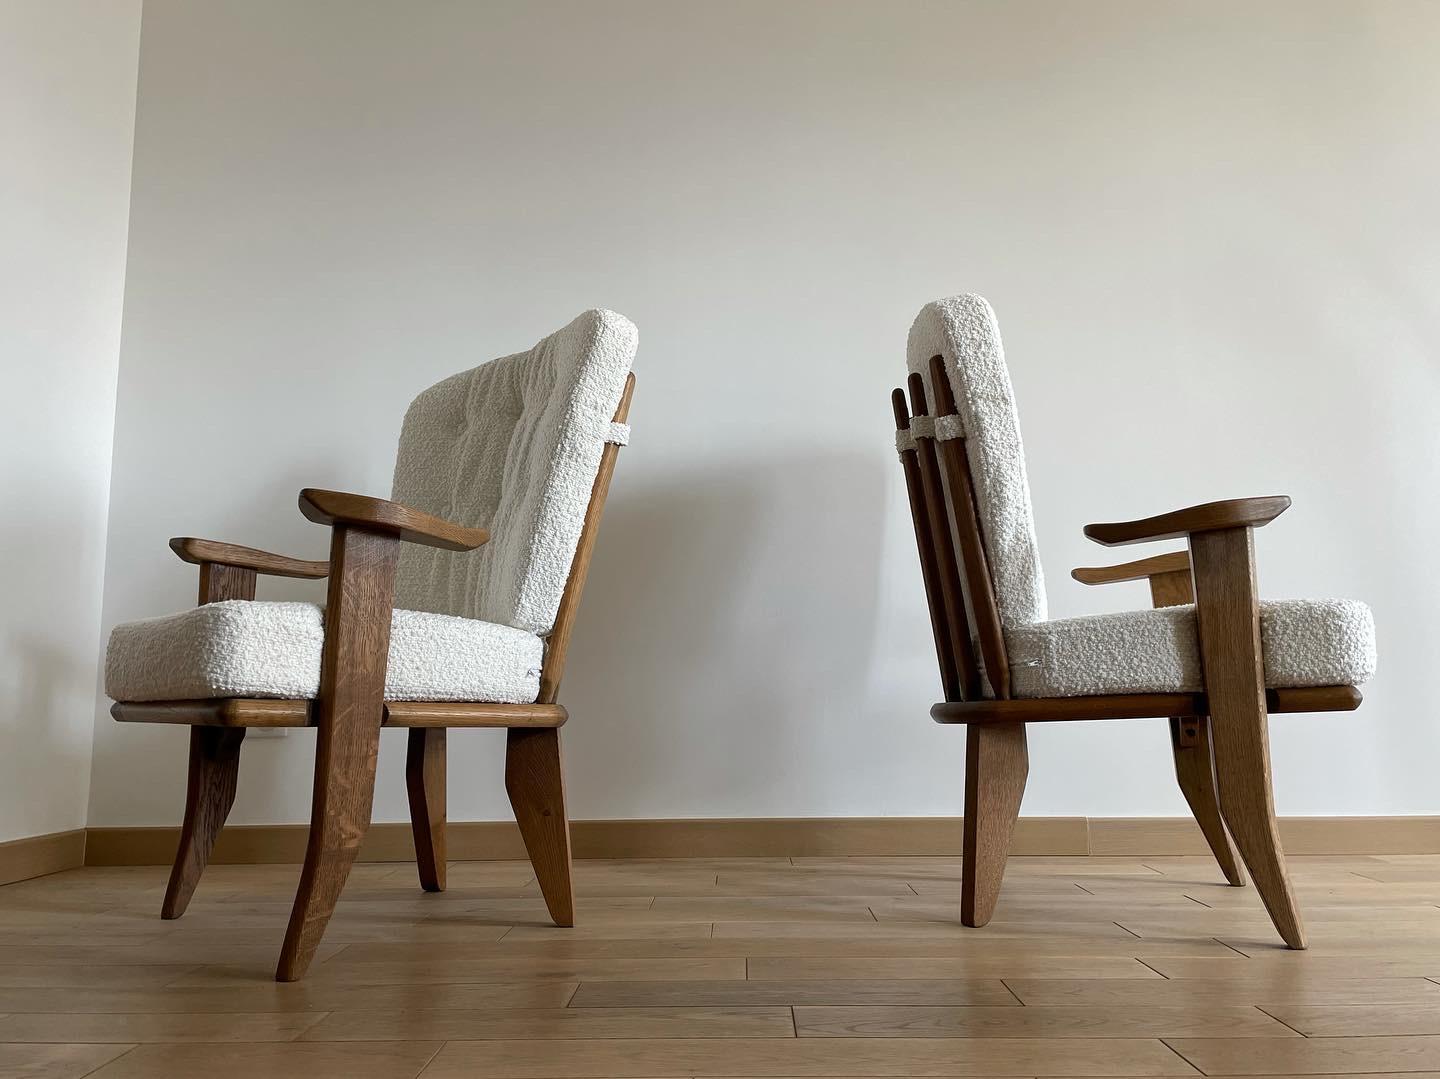 Paar Sessel von guillerme et chambron aus den 1960er Jahren. Struktur aus massiver Eiche und Kissen aus weißem Frotteestoff. Die gesamte Struktur wurde restauriert und die Kissen sind komplett neu und von einem Fachmann hergestellt.
Abmessungen: B75